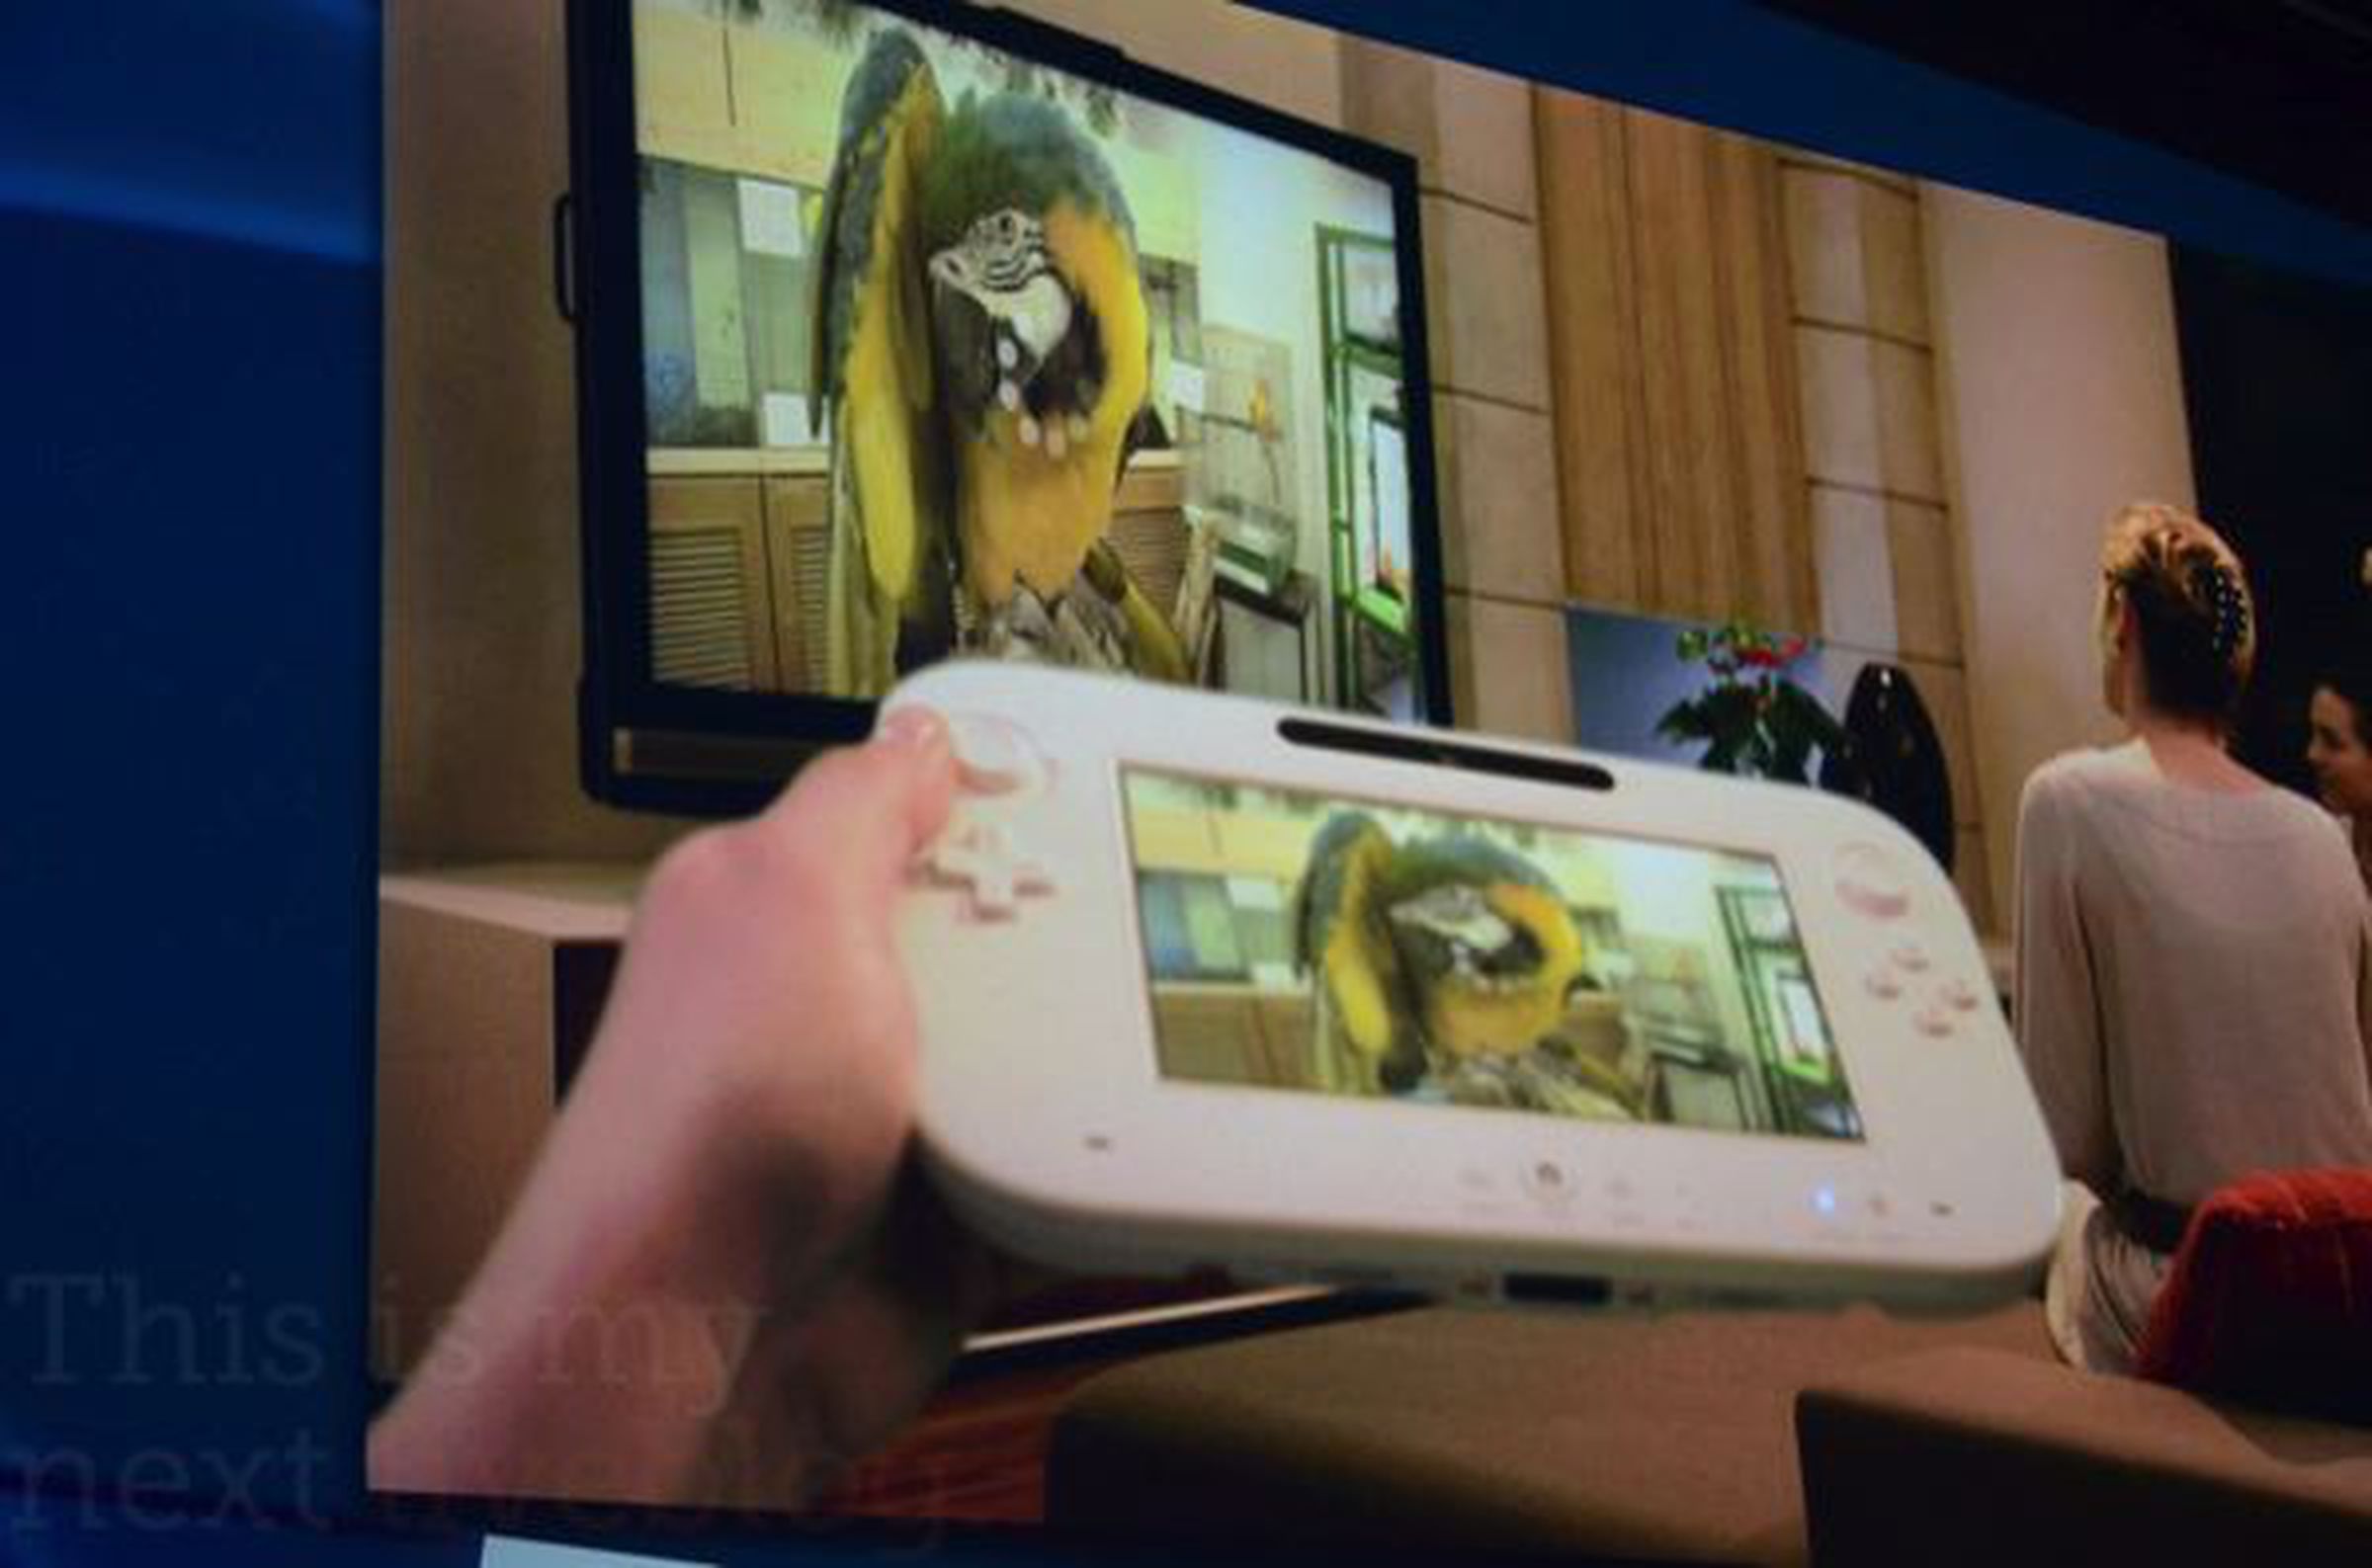 Nintendo Wii U pictures